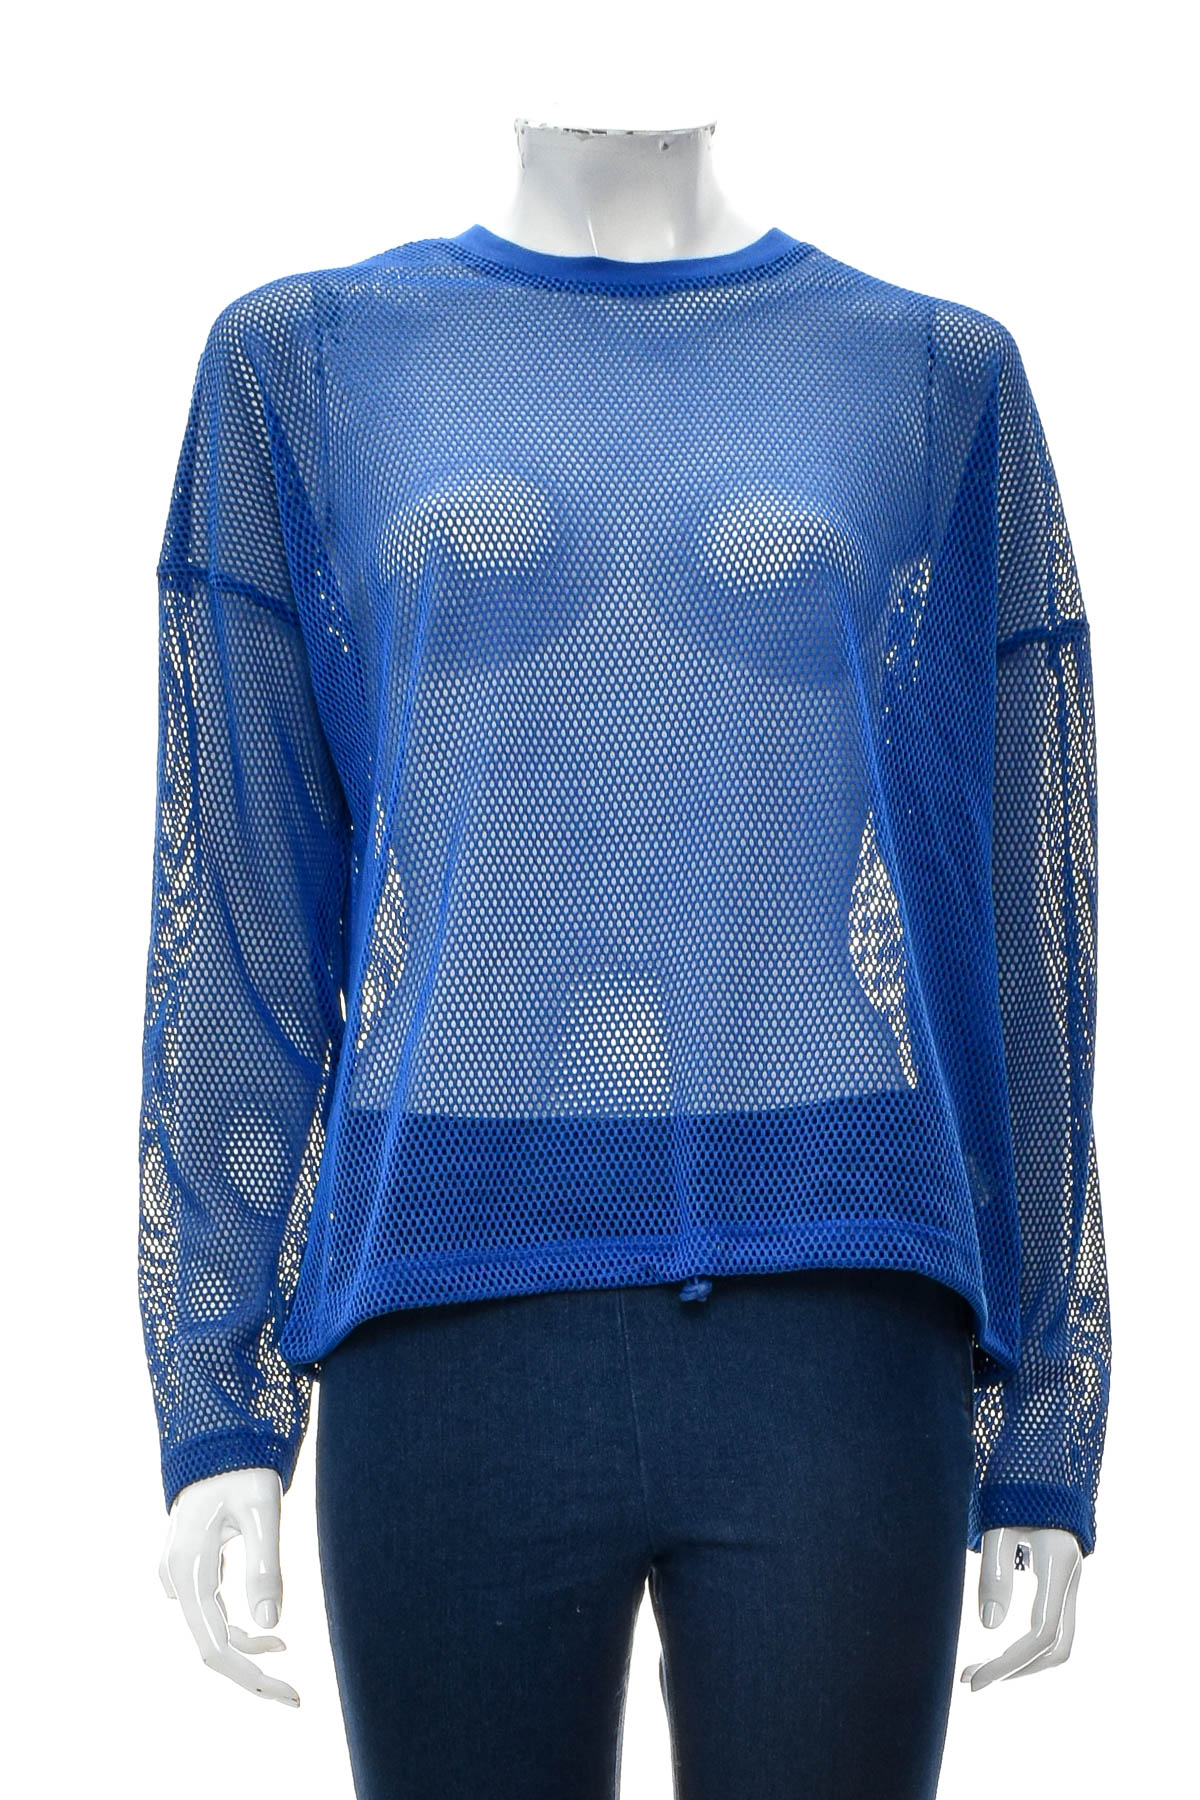 Women's blouse - Factorie - 0